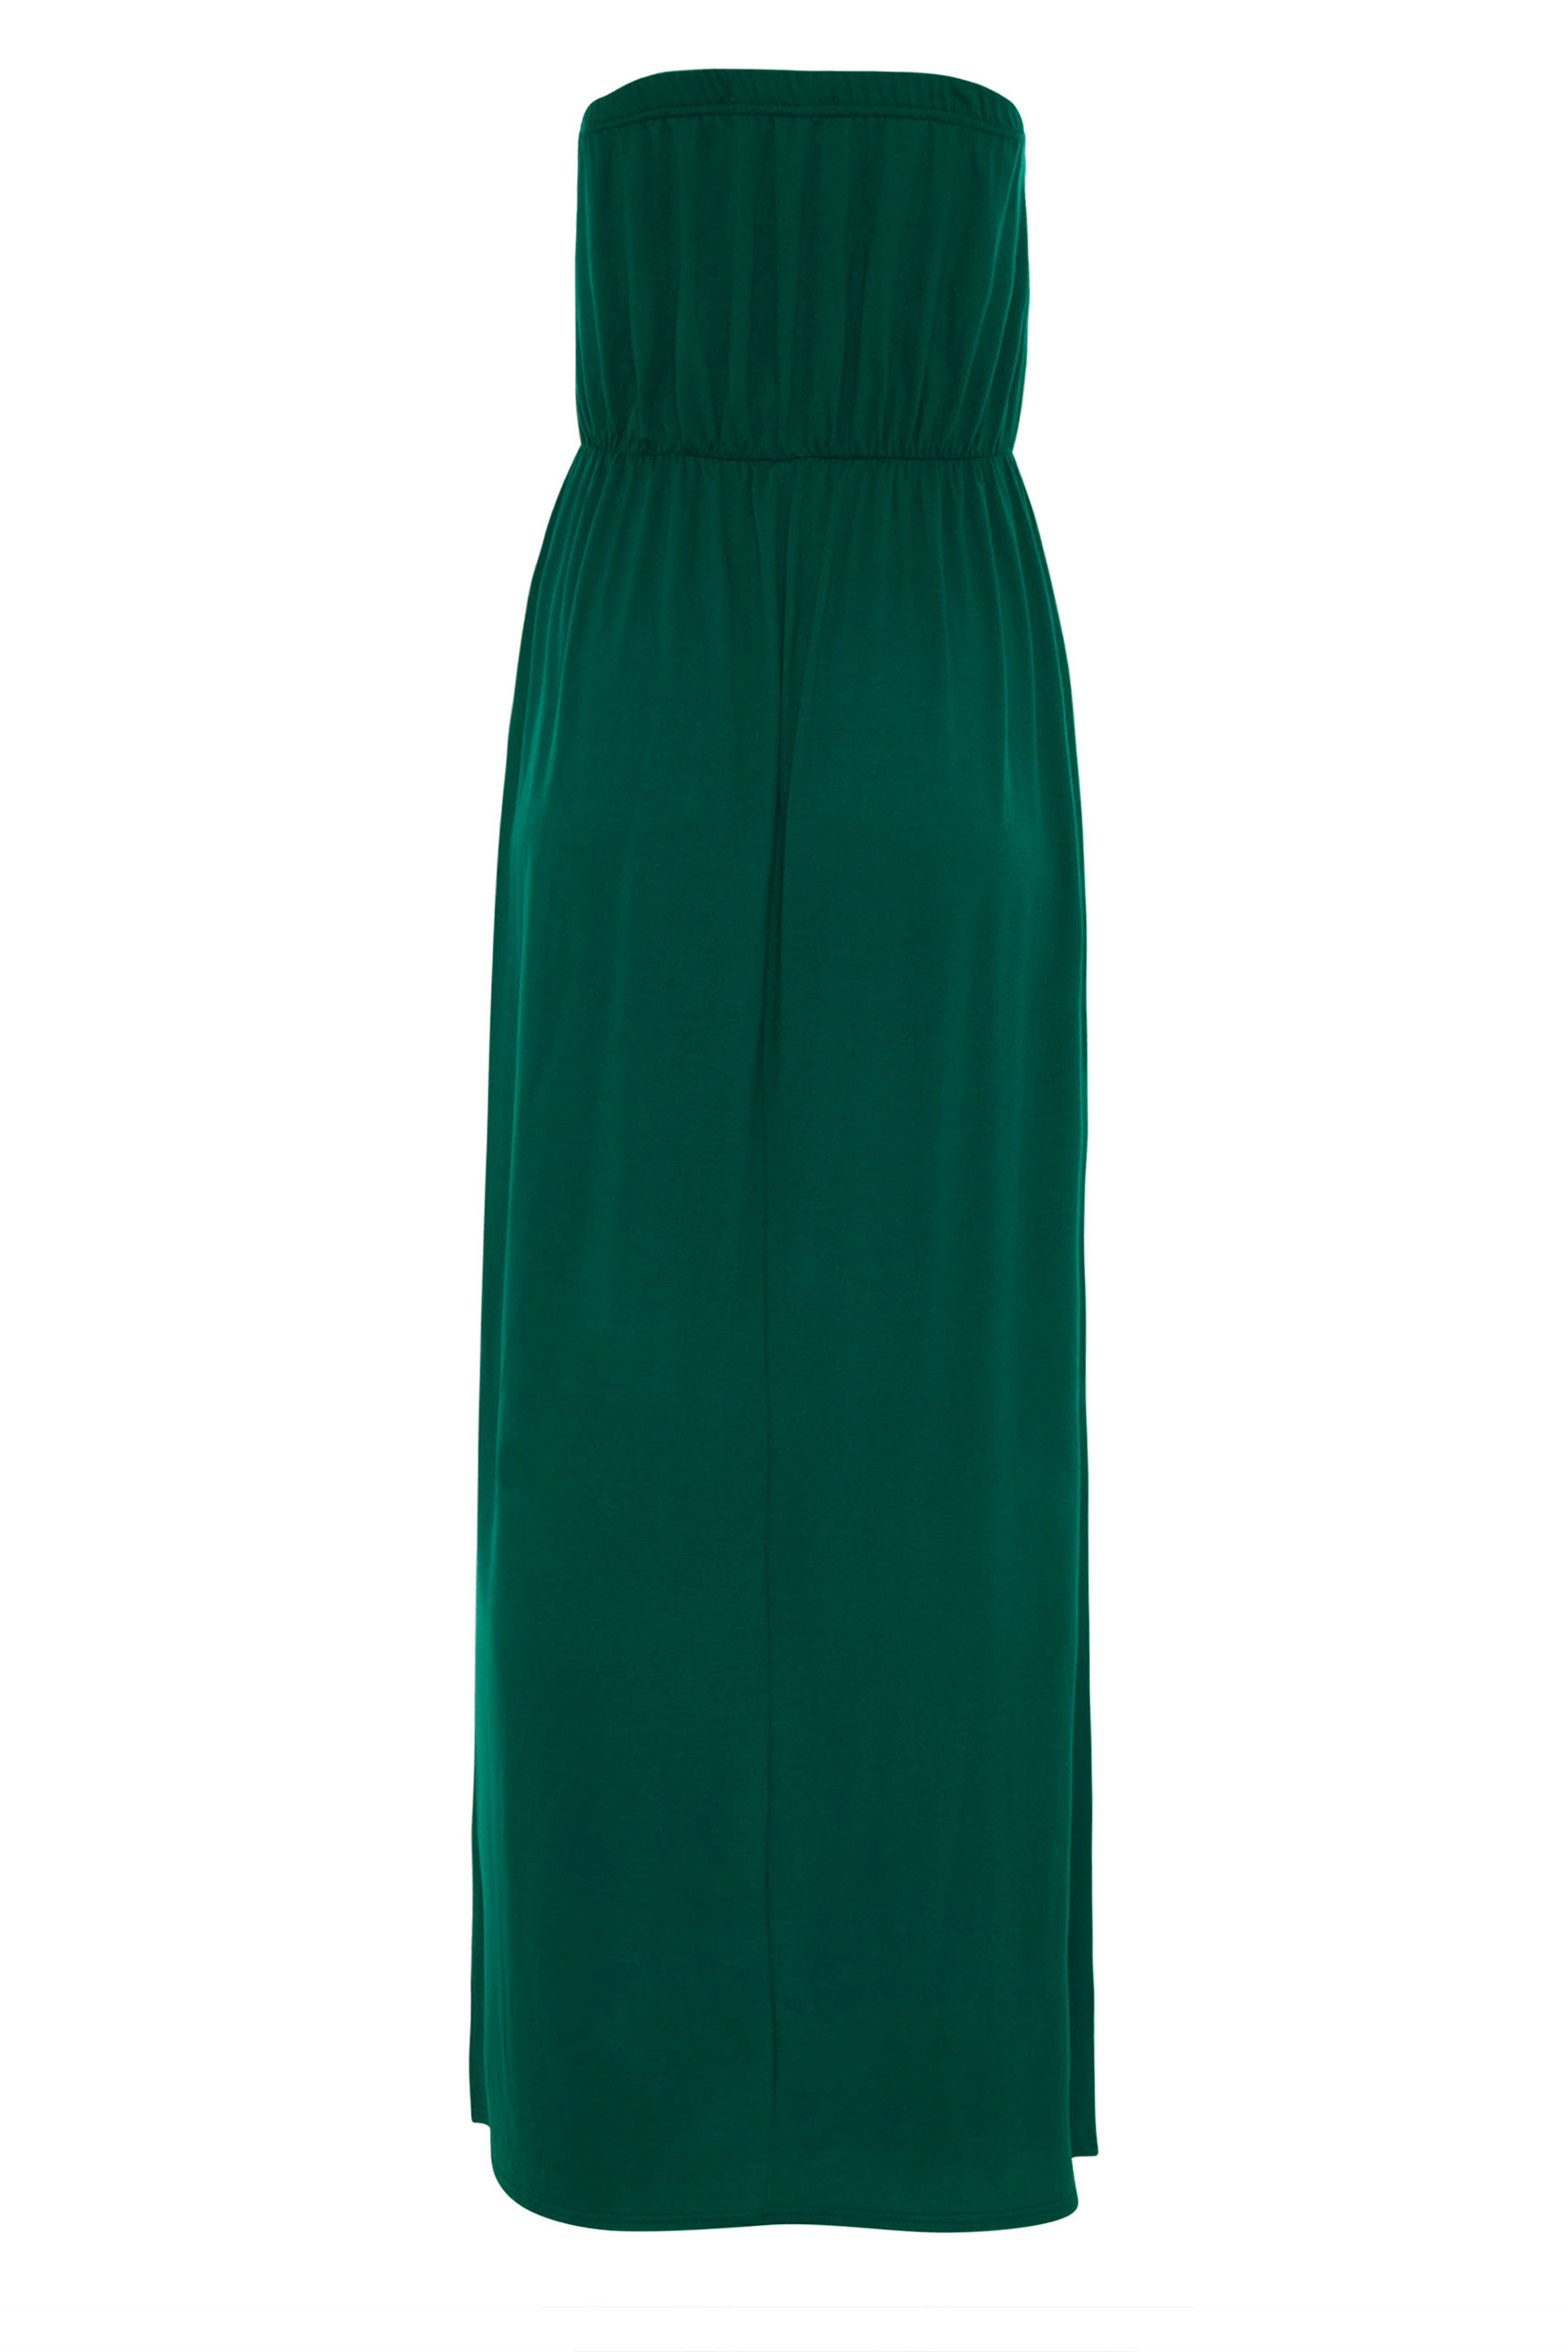 LTS Emerald Green Strapless Maxi Dress | Long Tall Sally